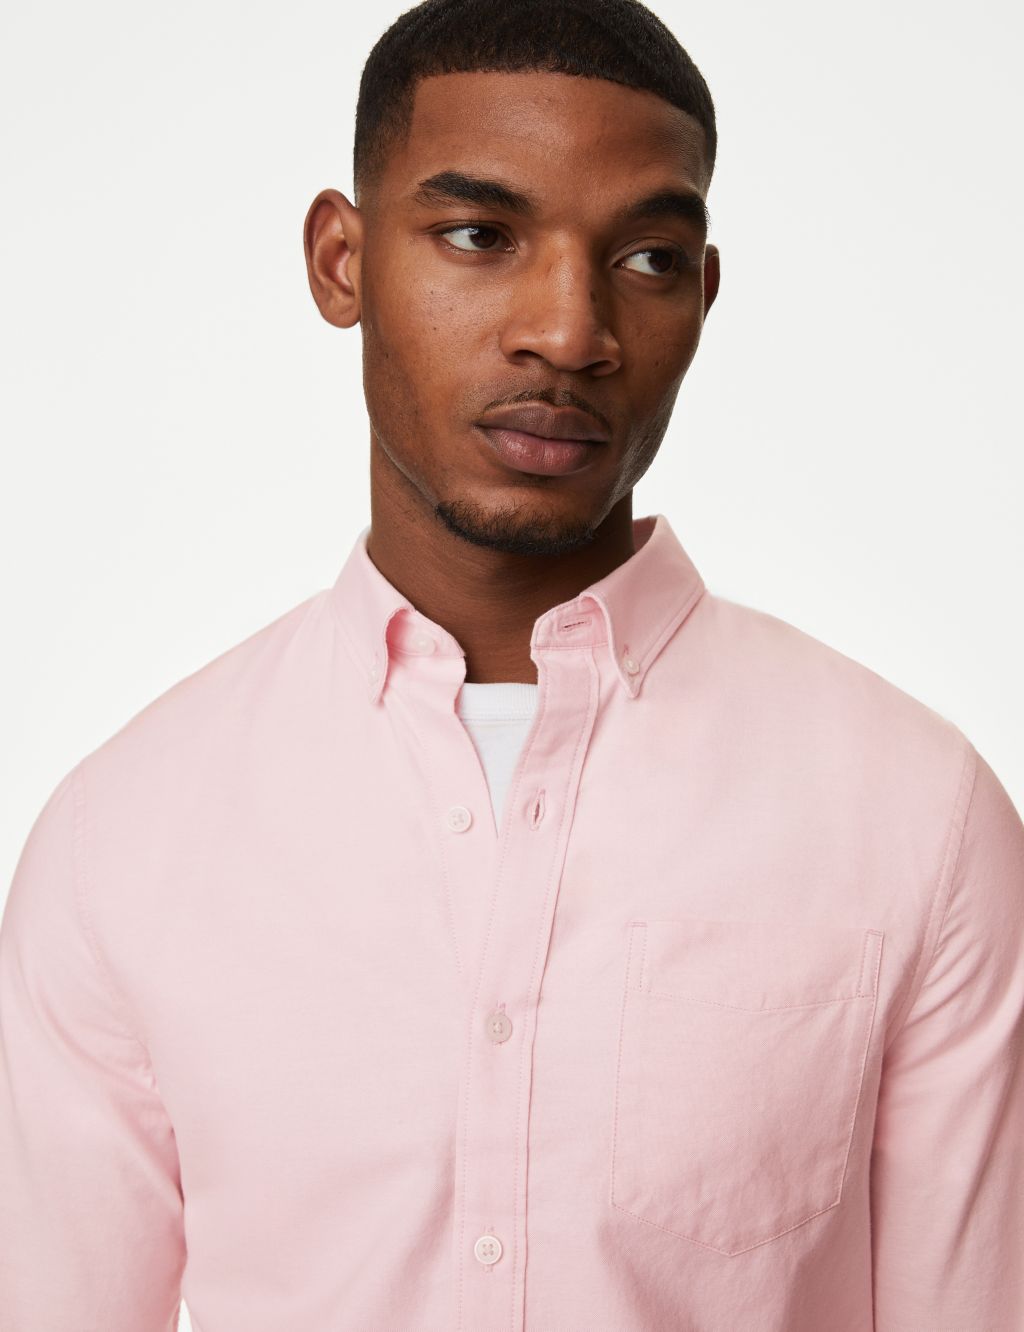 Men's Pink Shirts